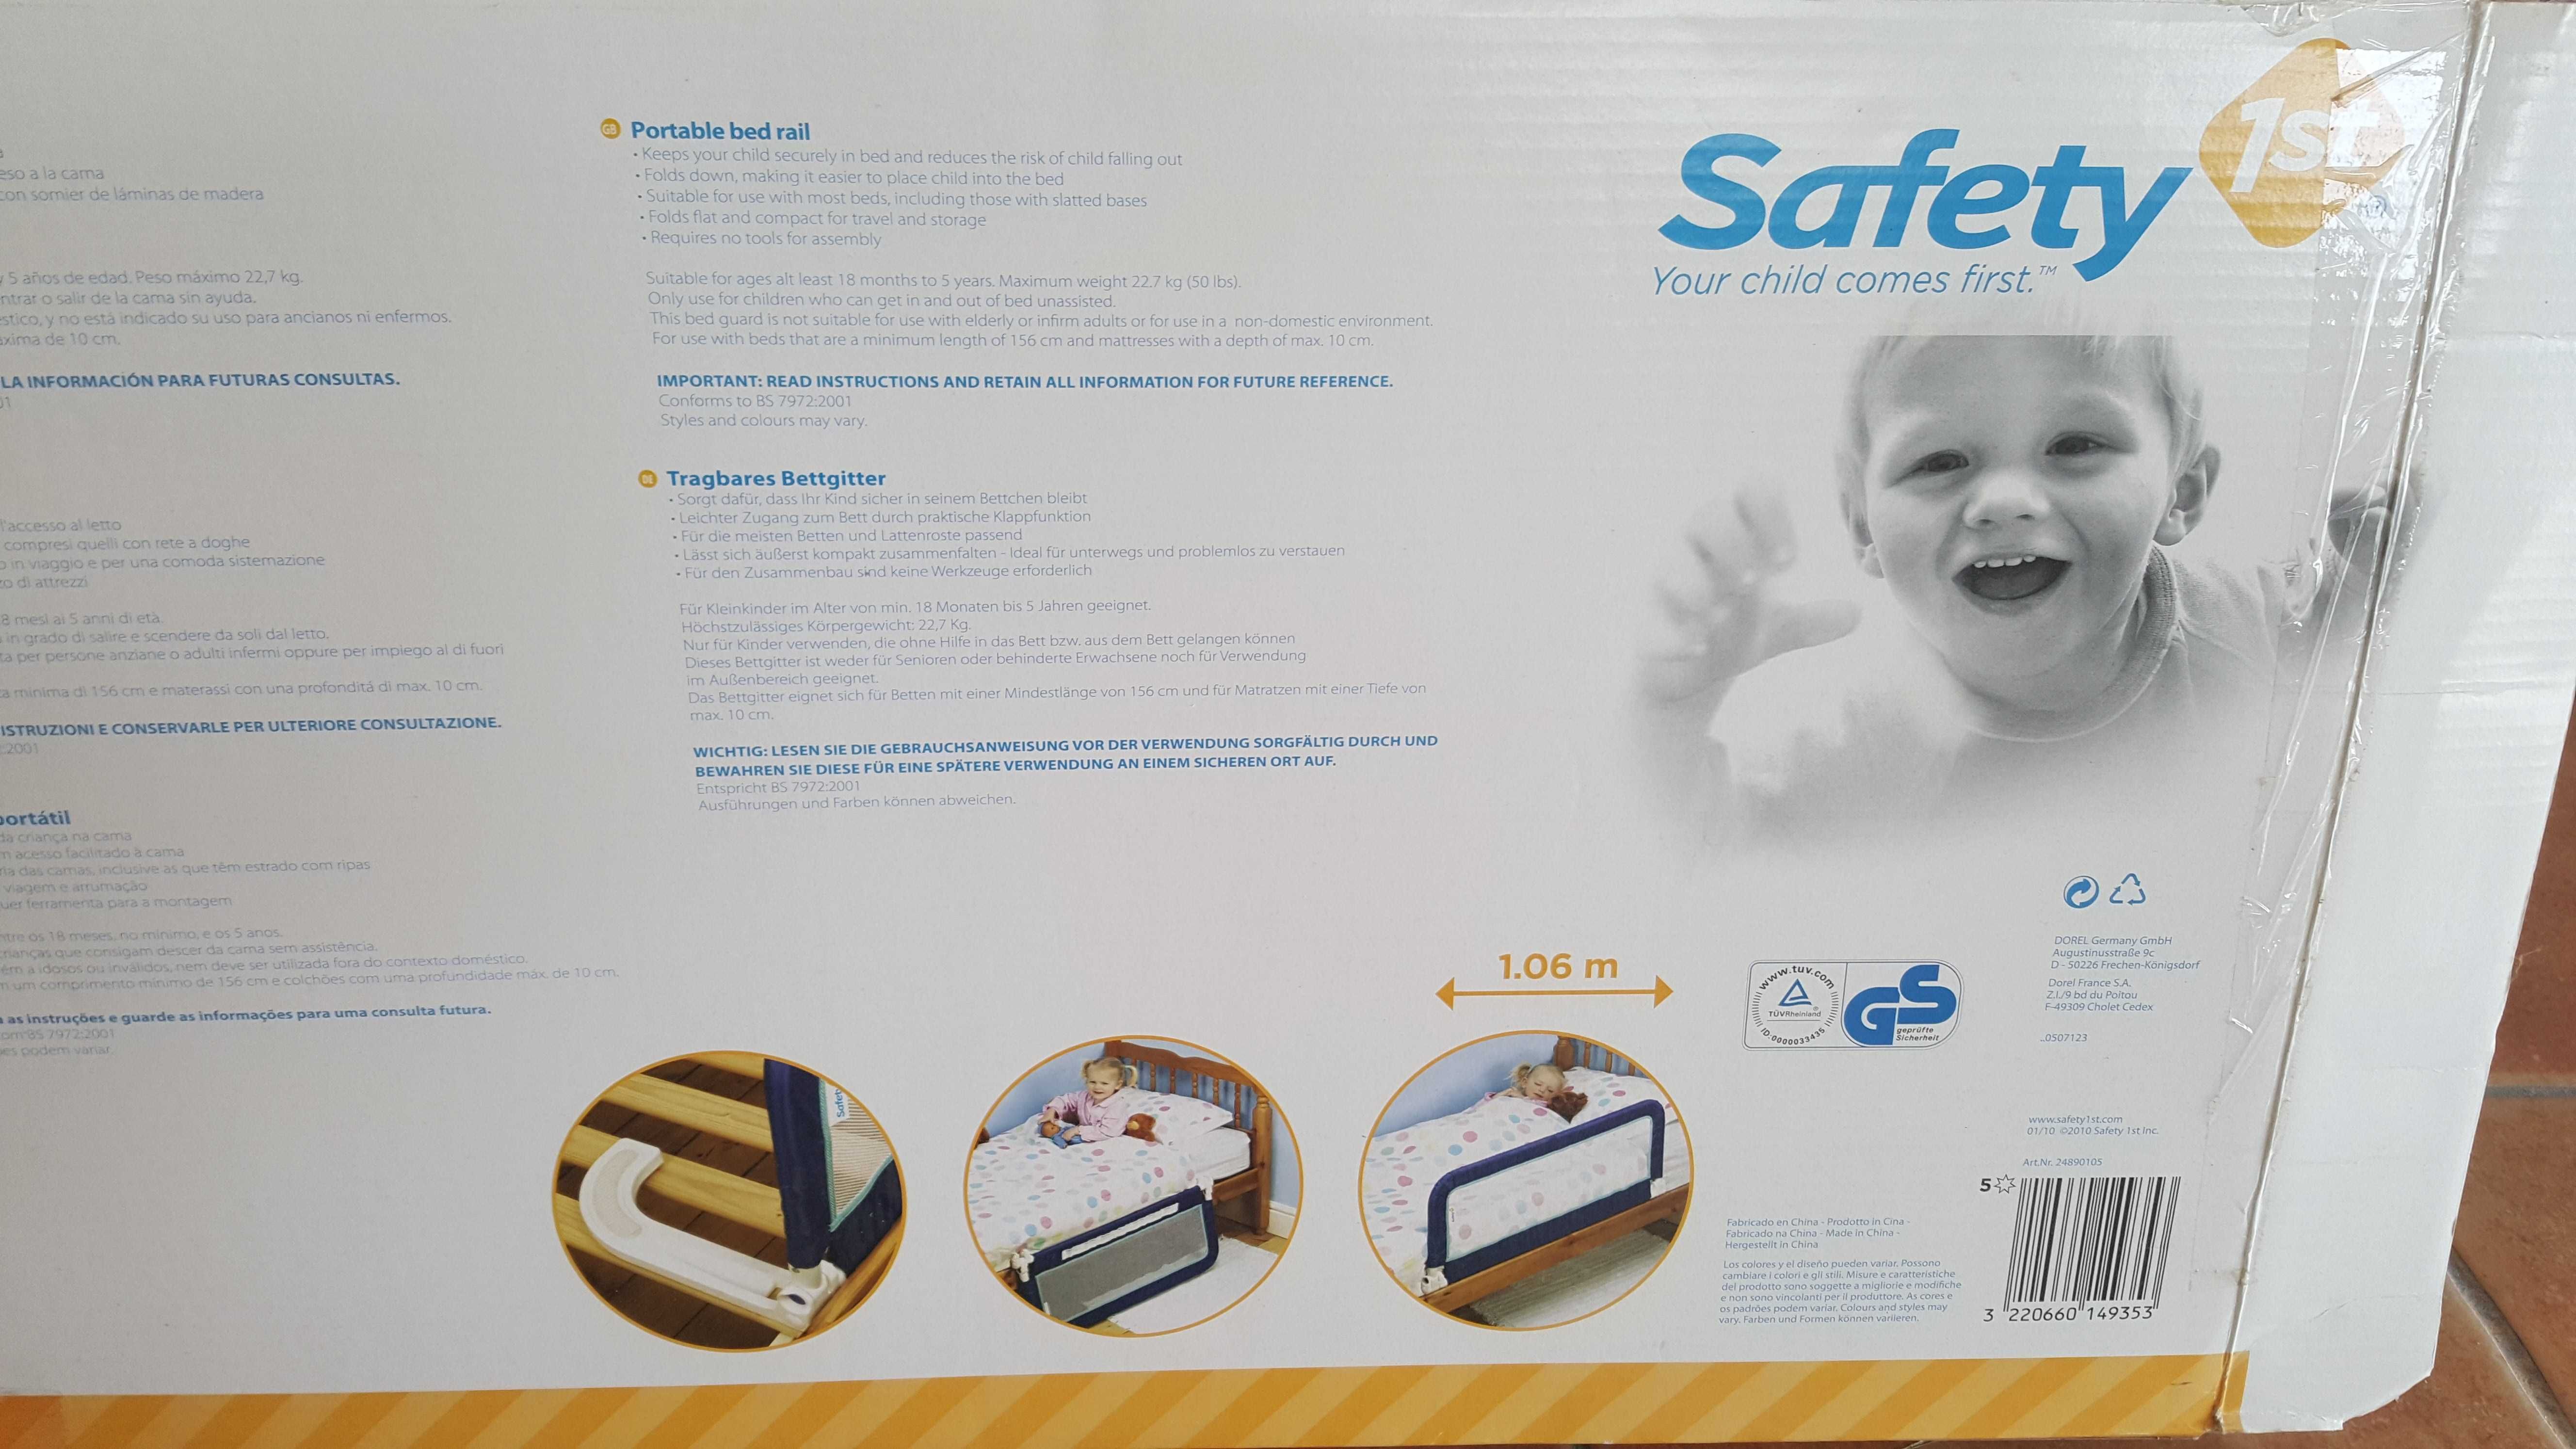 Barra de proteção lateral para cama de criança